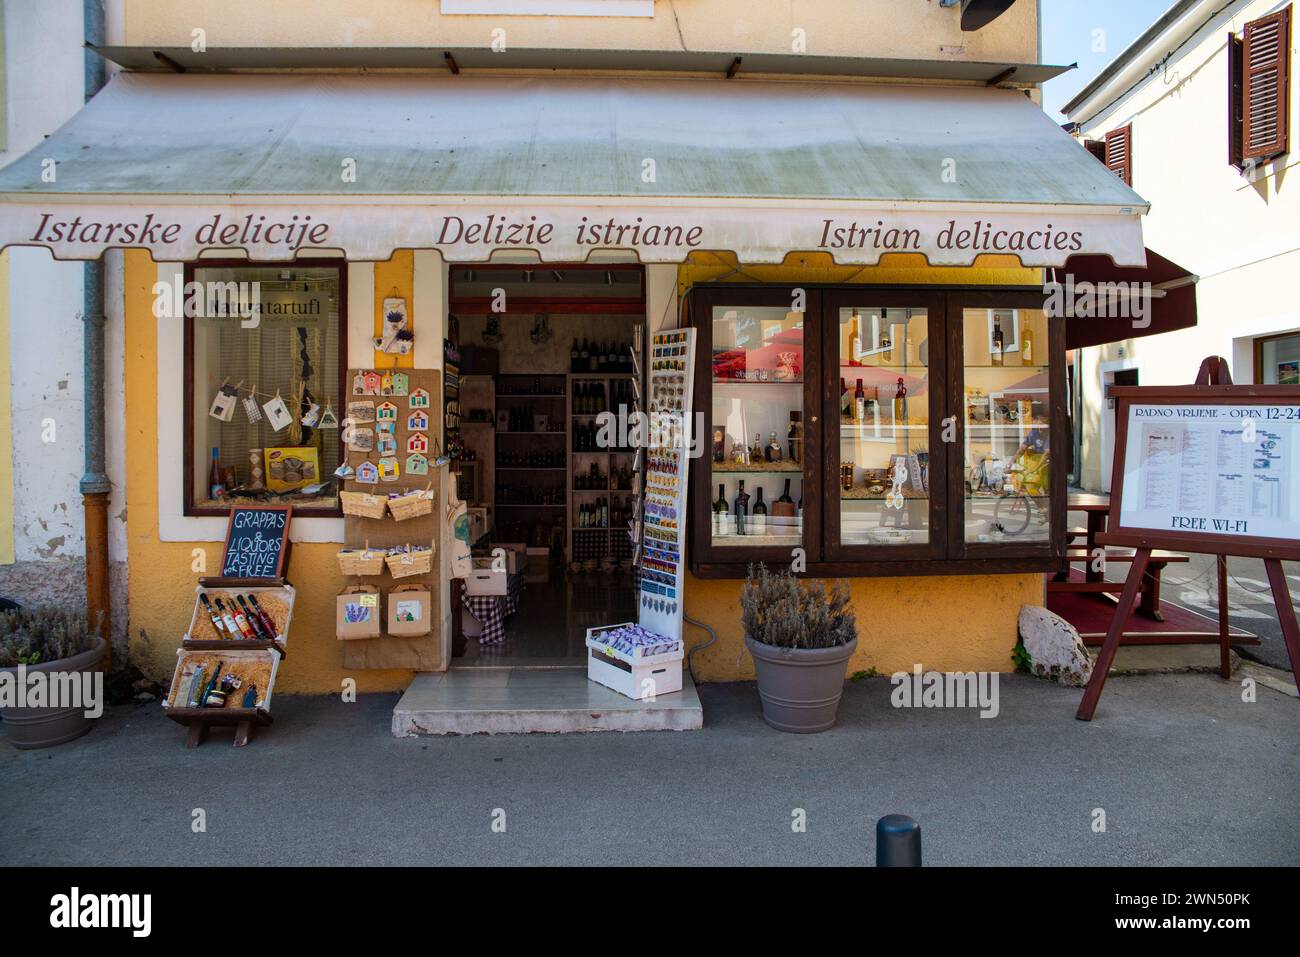 Ein kleiner Laden mit Souvenirs, Olivenöl und lokalen alkoholischen Likören, z.B. Grappa. Novigrad, Istrien, Kroatien 2015. Stockfoto